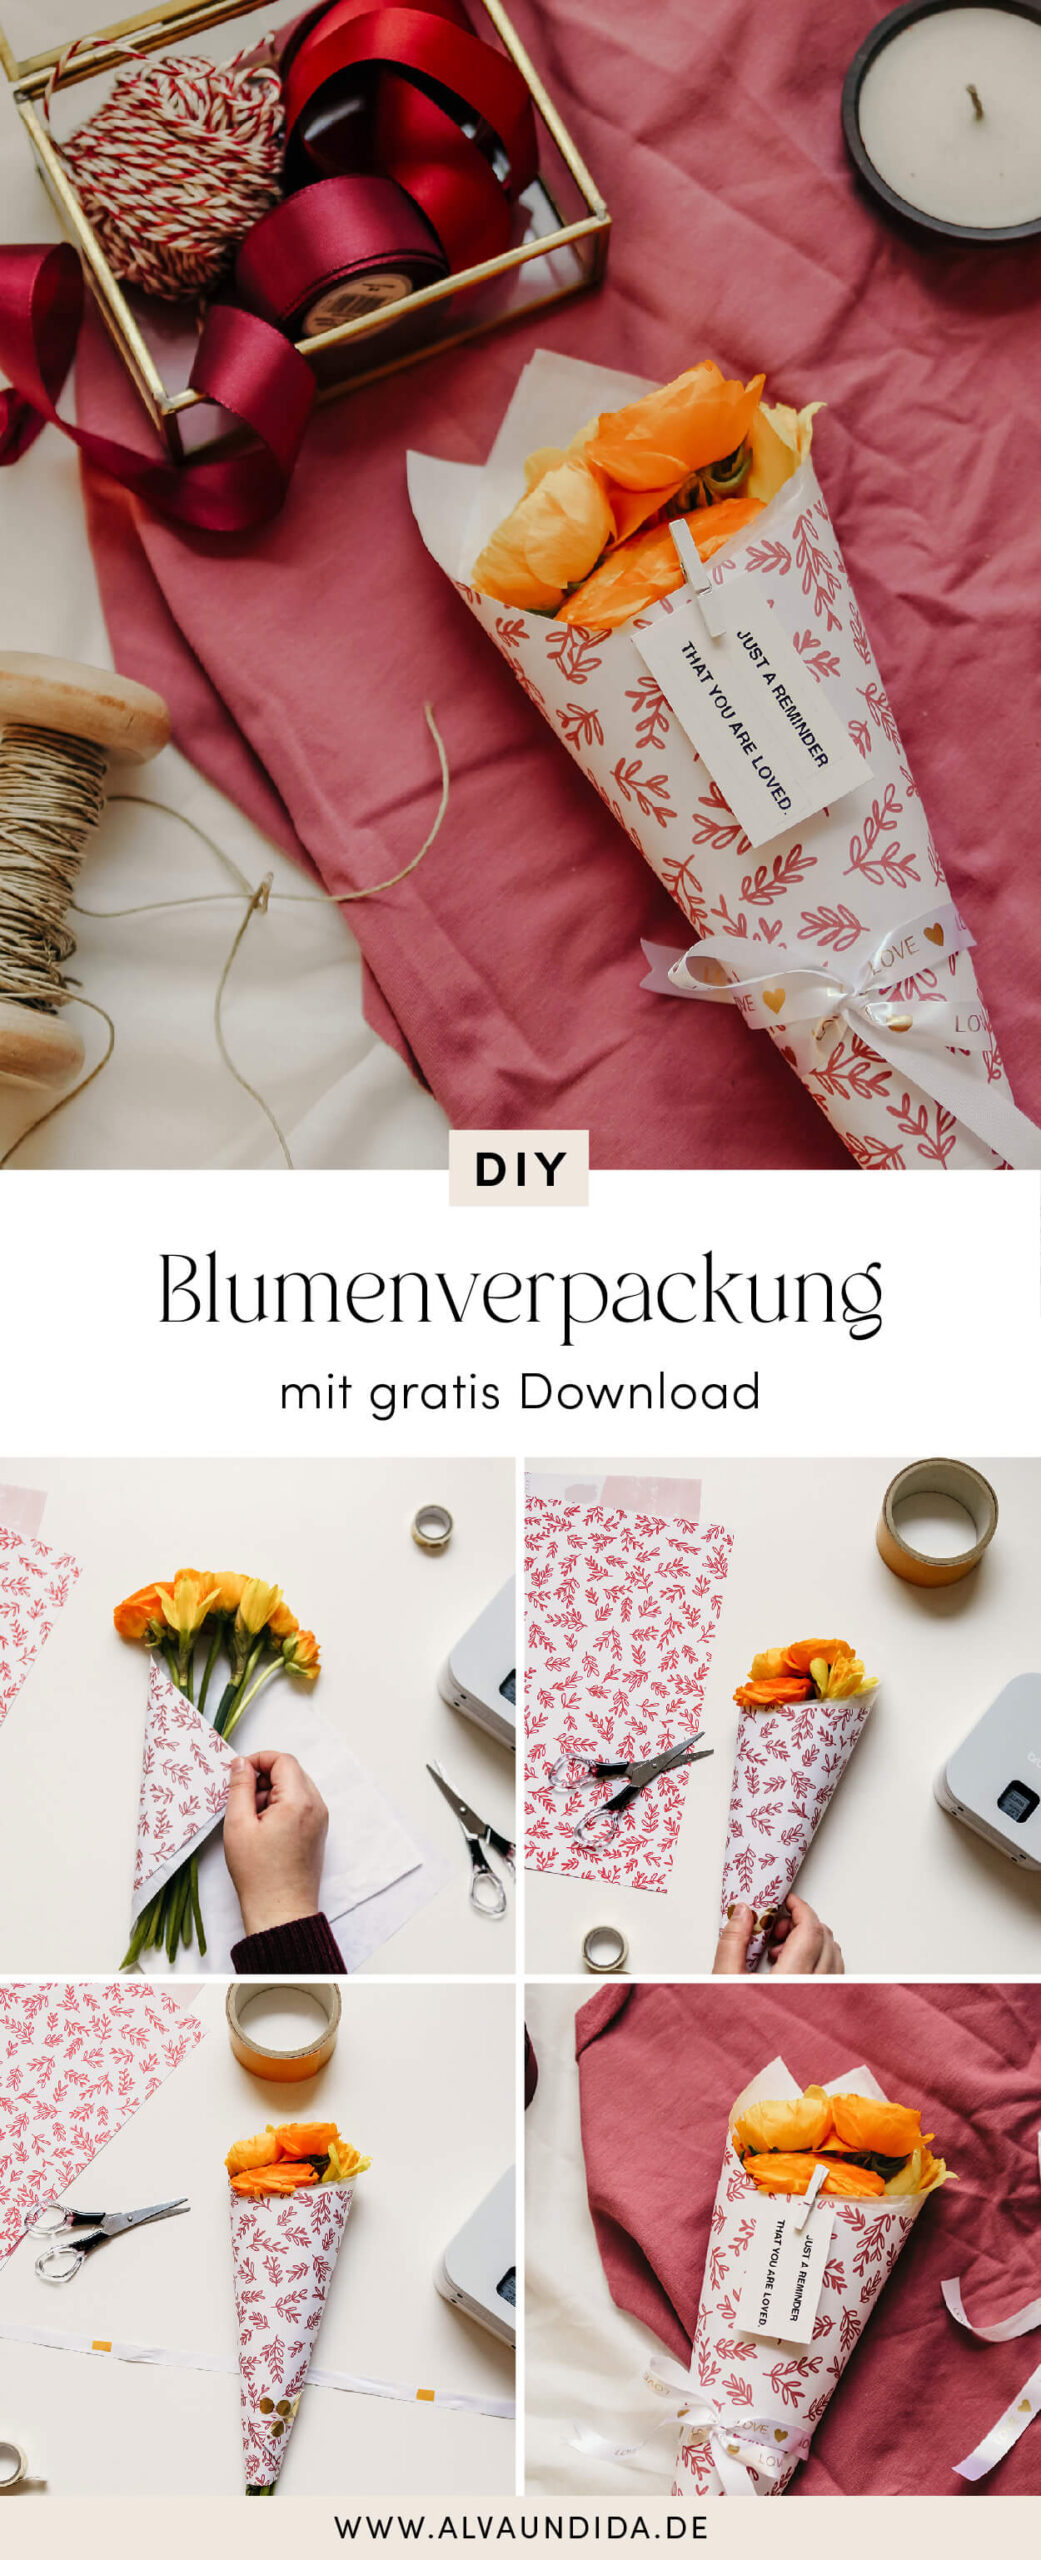 Alva & Ida - DIY Blog, Nachhaltigkeit, Slow living - Blumenverpackung selber machen